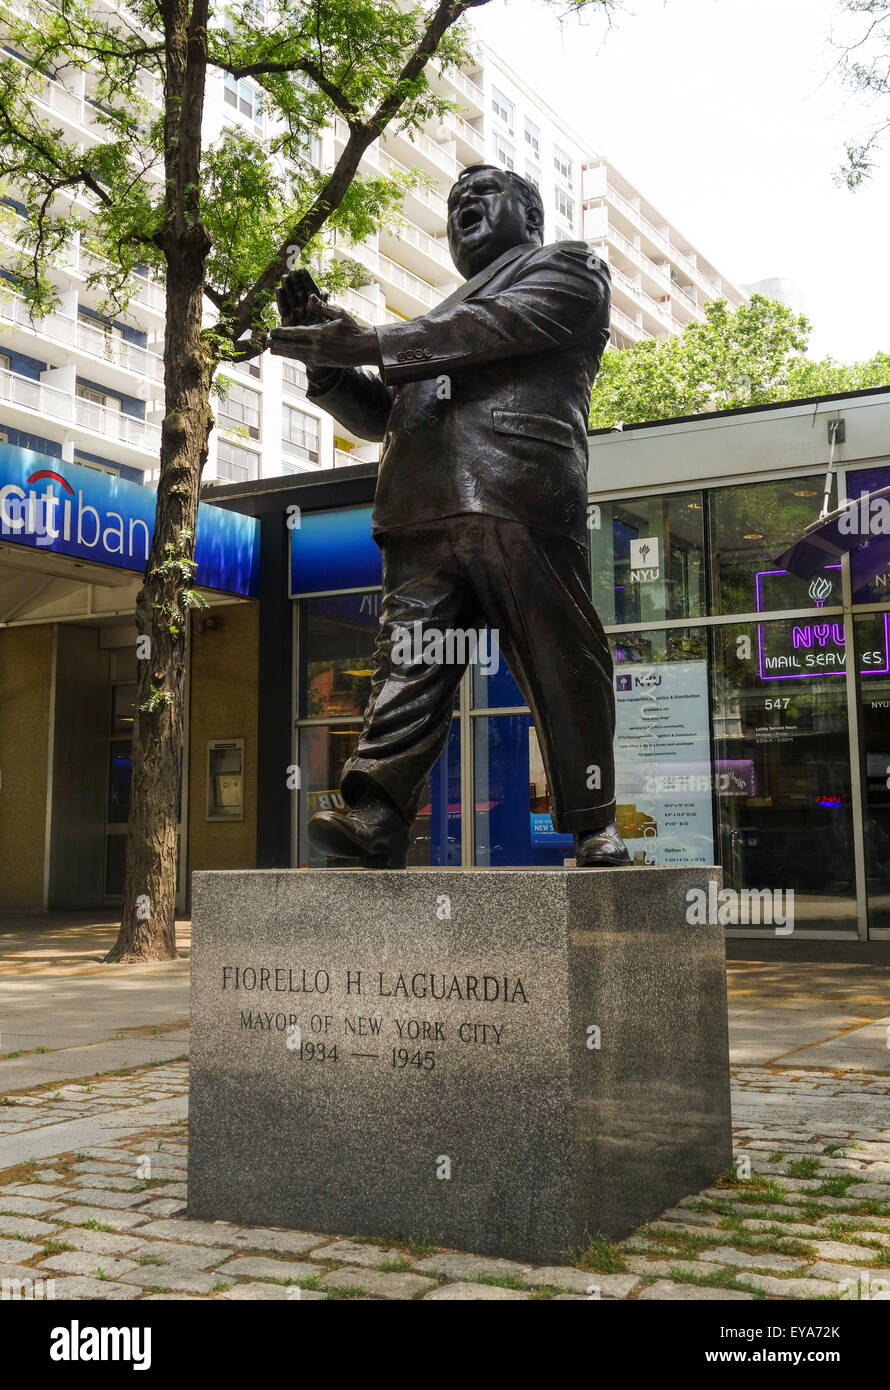 Statue in honor of Fiorello H. La Guardia, mayor of New York City, La Guardia Place,  Greenwich Village, NYC, United States. Stock Photo